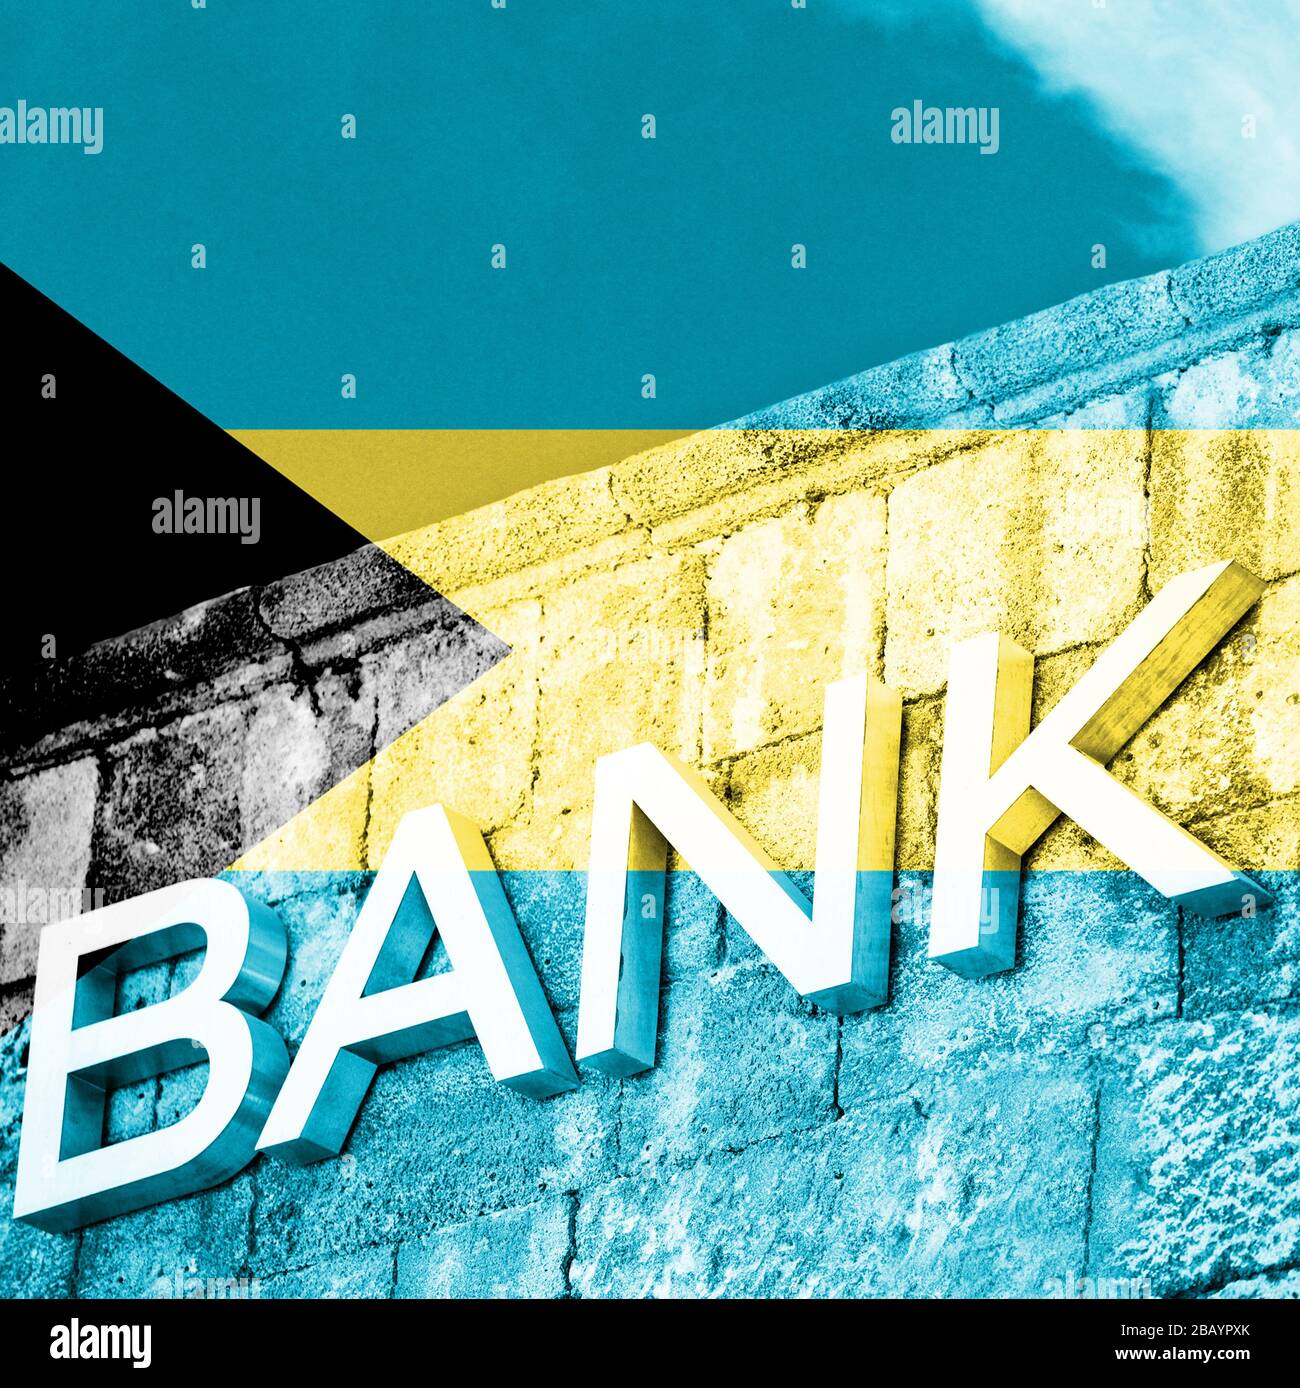 Finanz- und Wirtschaftskonzept der Bank mit Flagge der Bahamas Stockfoto